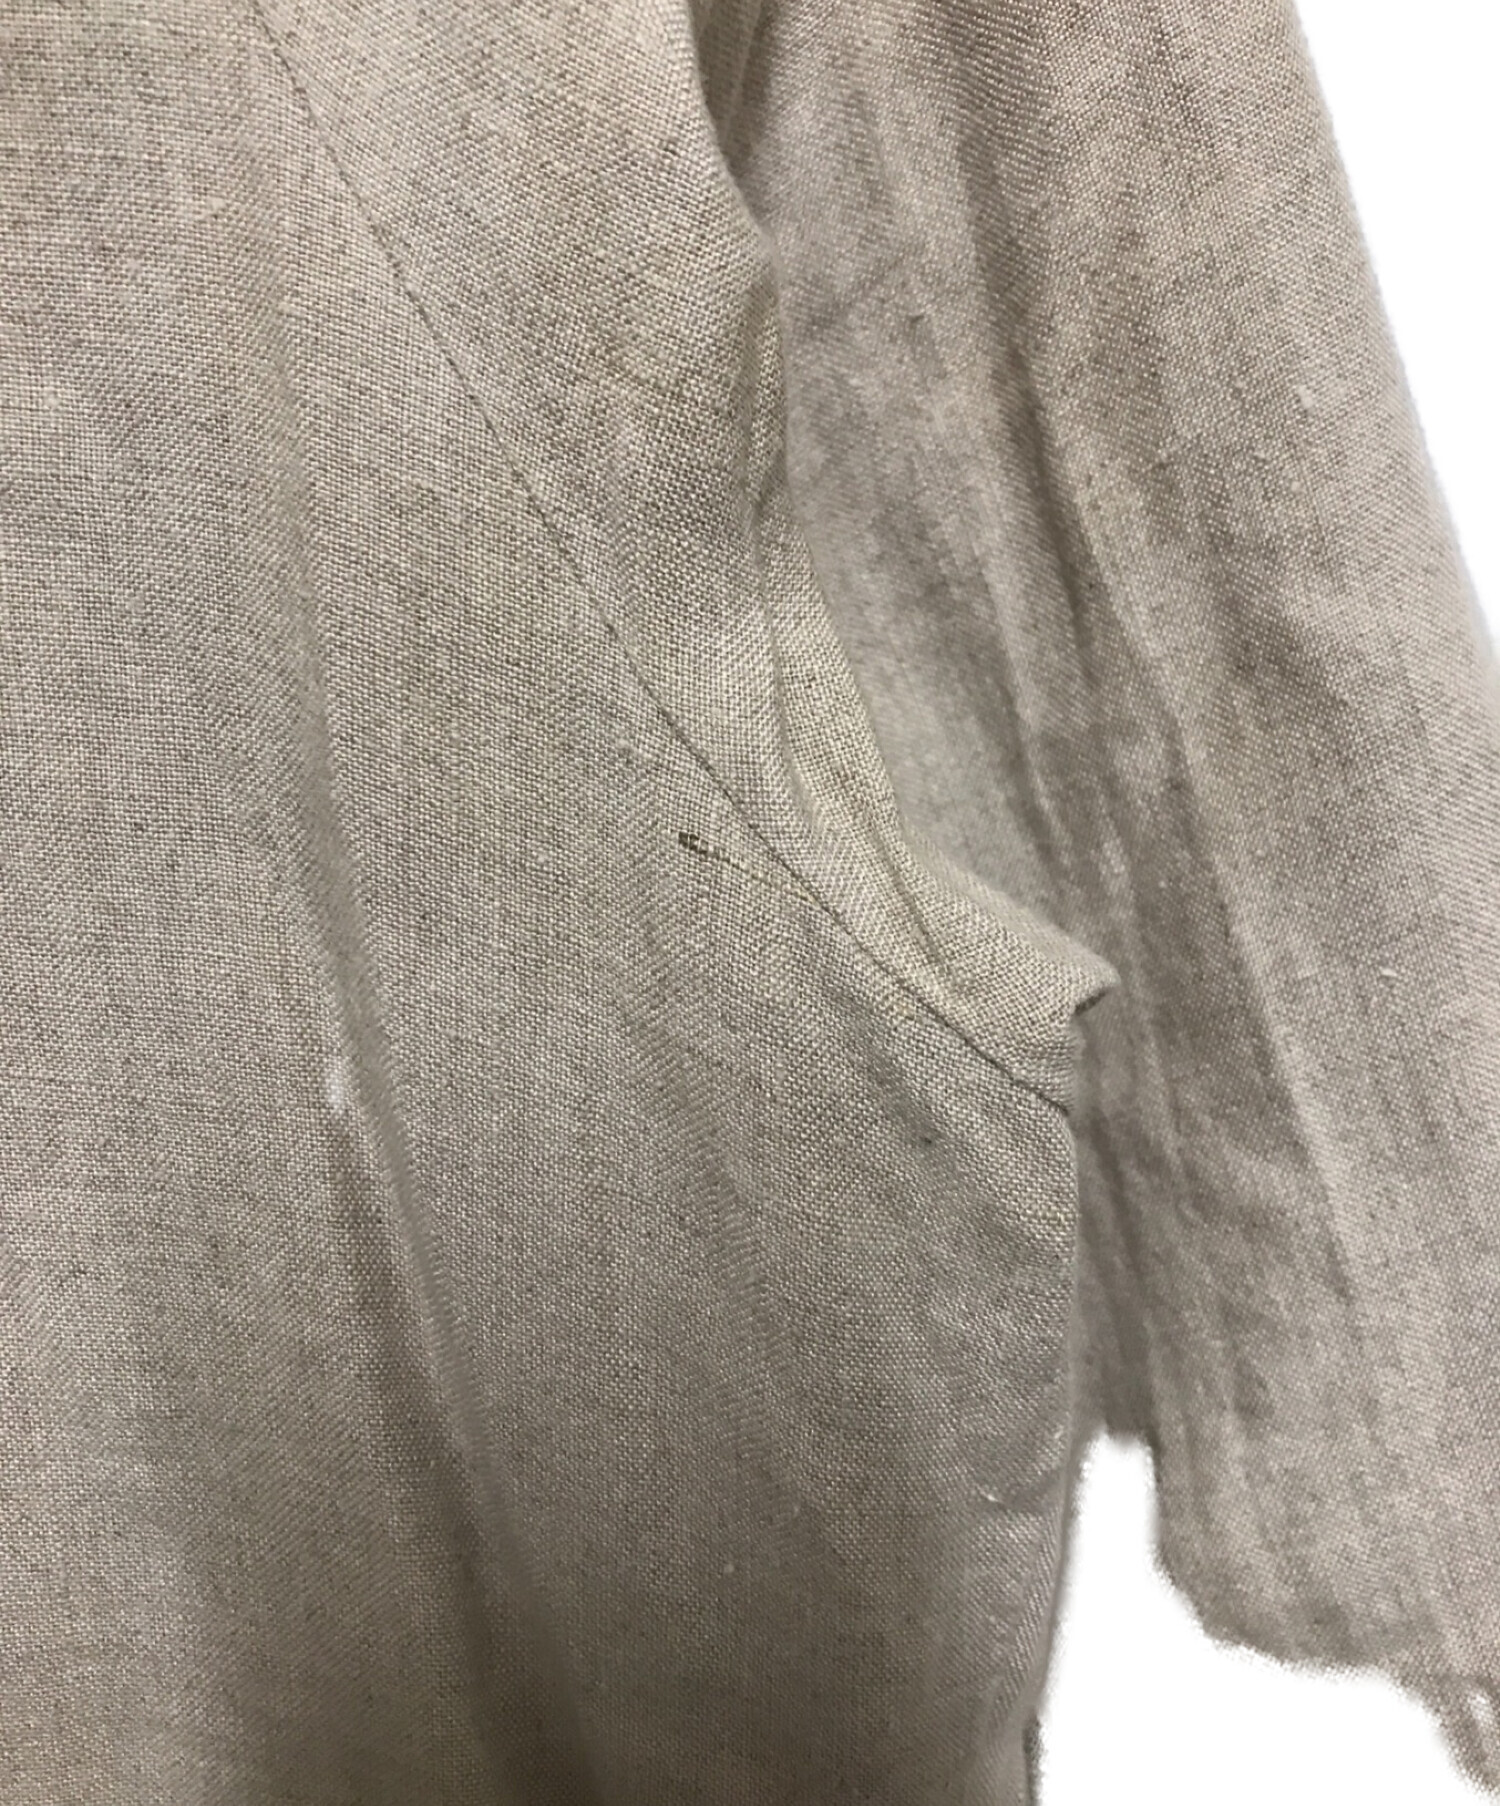 オンライン買い物 hazama 繍美が残した痕跡のロングシャツ シャツ ...